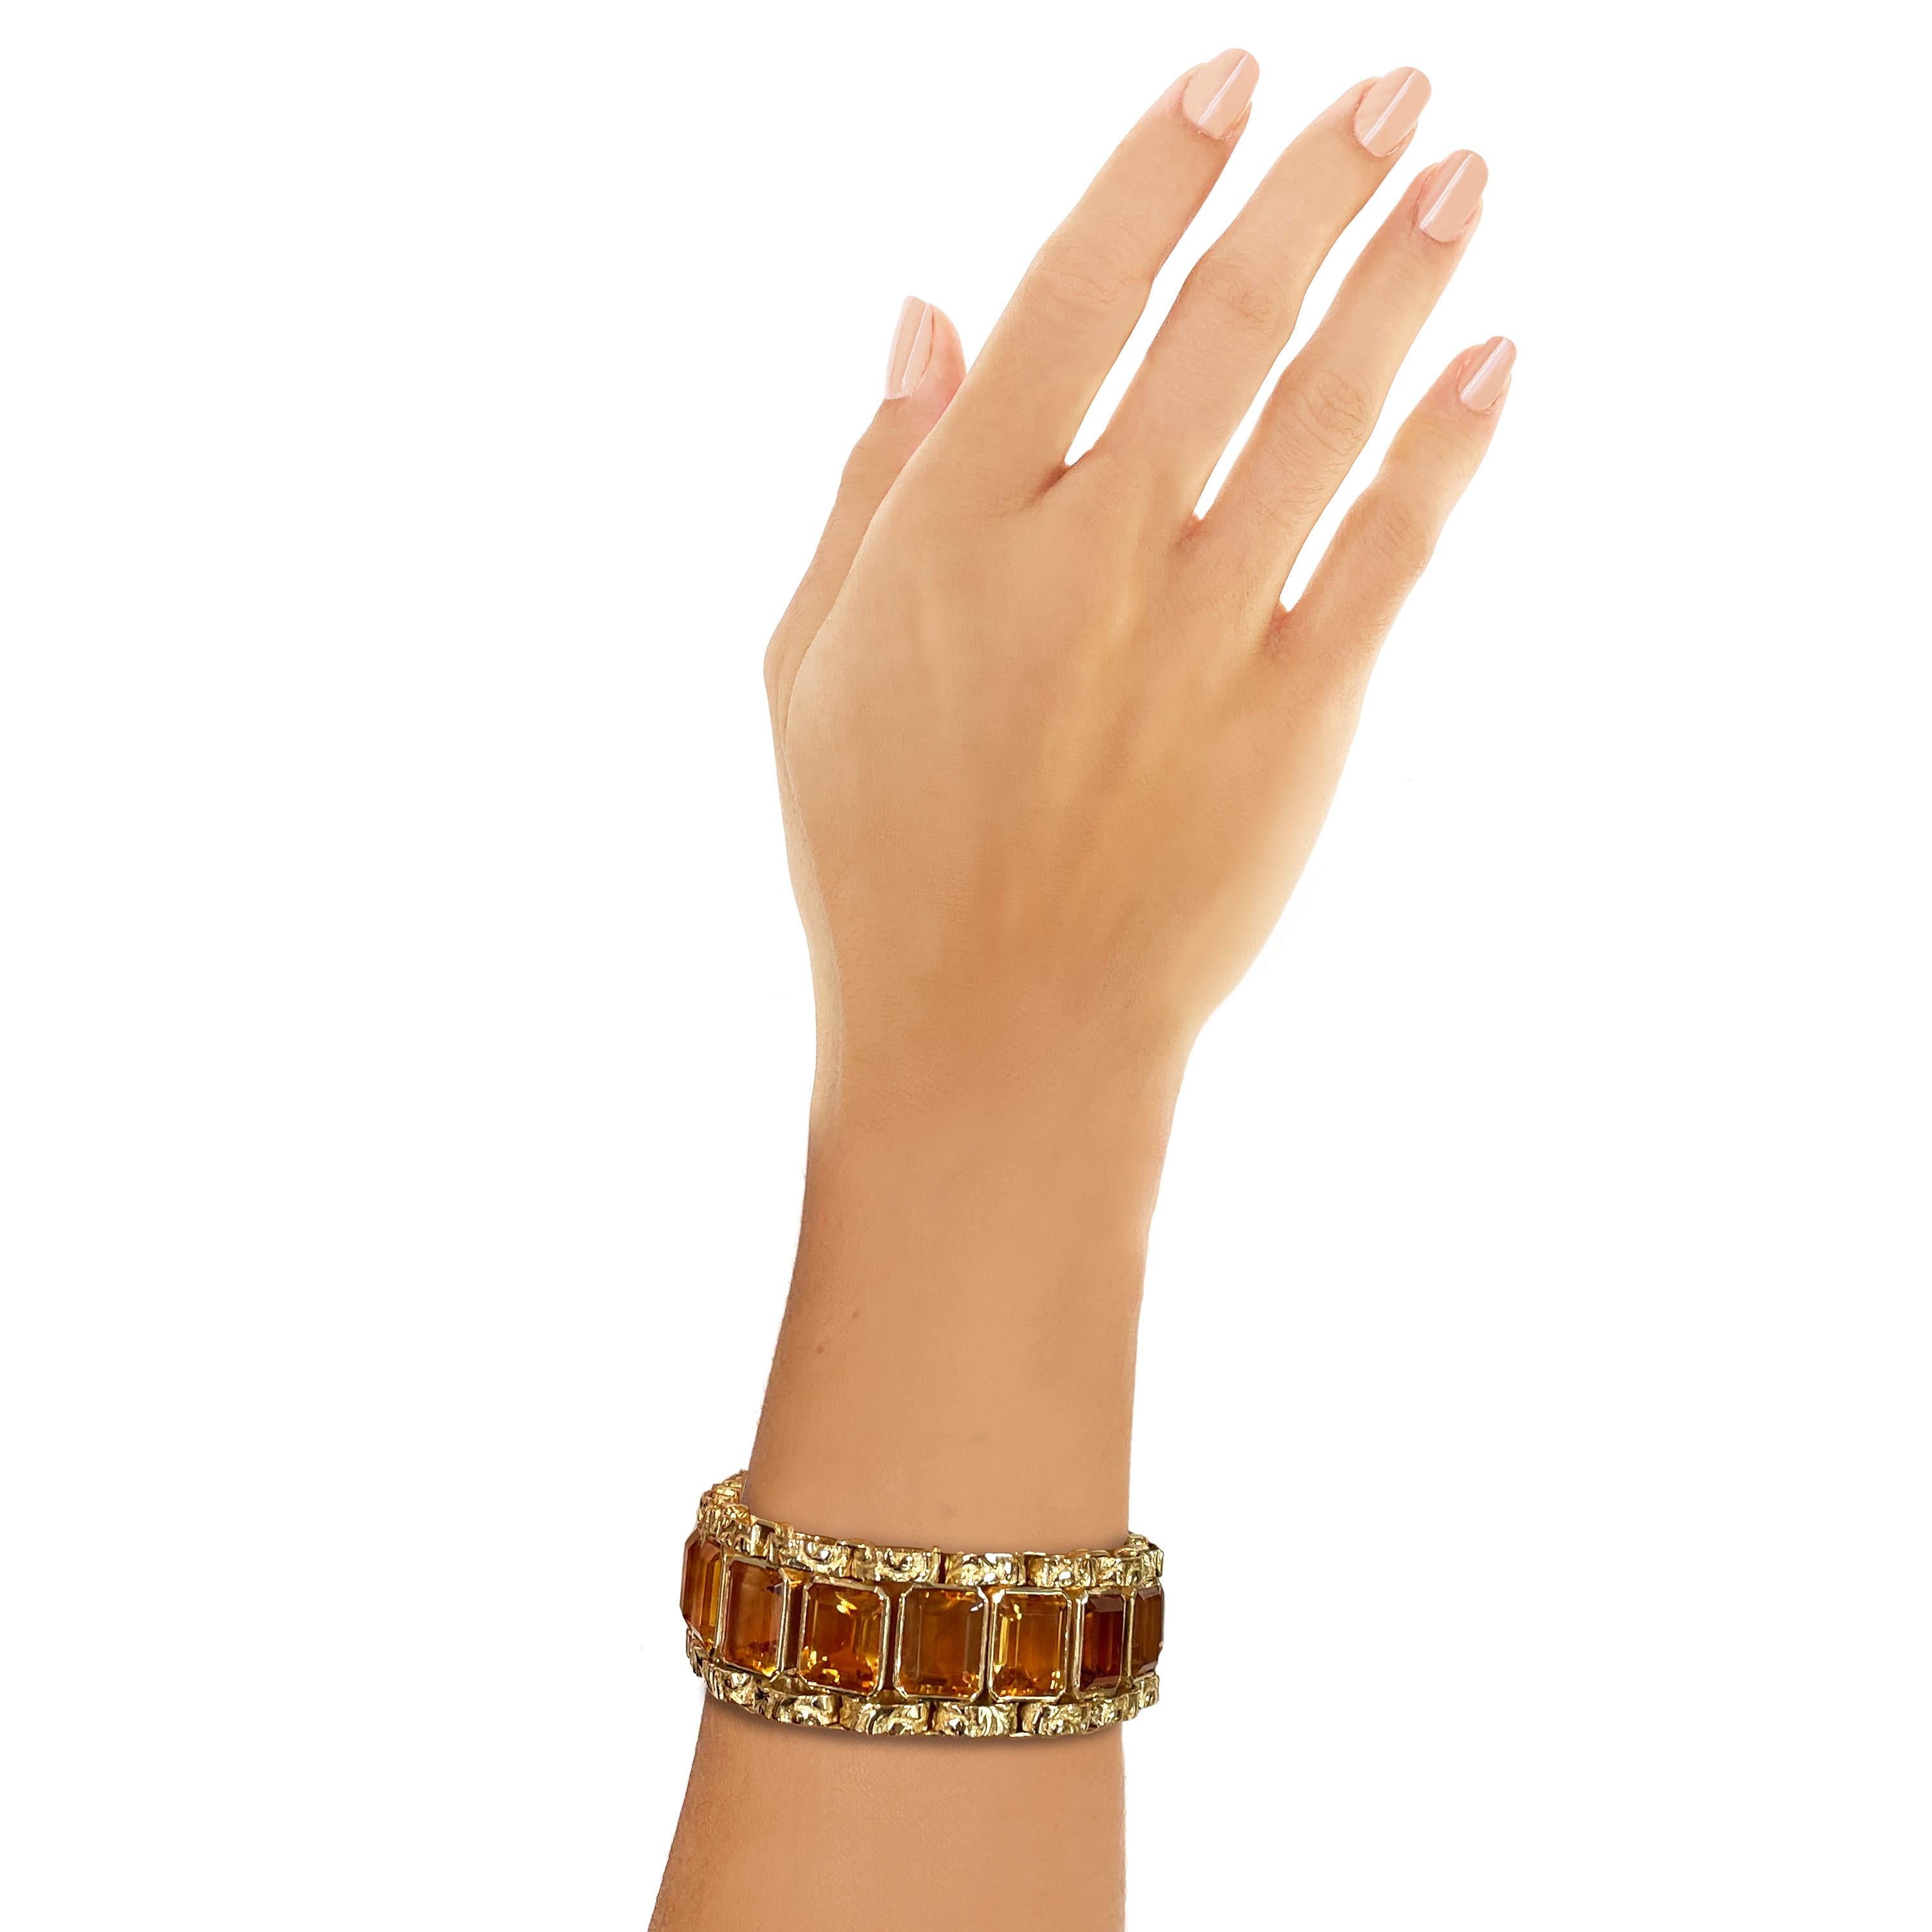 Vintage Rosior Hand gemeißelt 19,2 K Gelbgold-Armband mit gesetzt:
- 19 Topase im Smaragdschliff mit 69,80 ct.
Einzigartiges Stück mit einem eigenen Echtheitszertifikat.
Von der portugiesischen Prüfstelle als 19,2k Gold gestempelt.
Mit Rosior-Punze